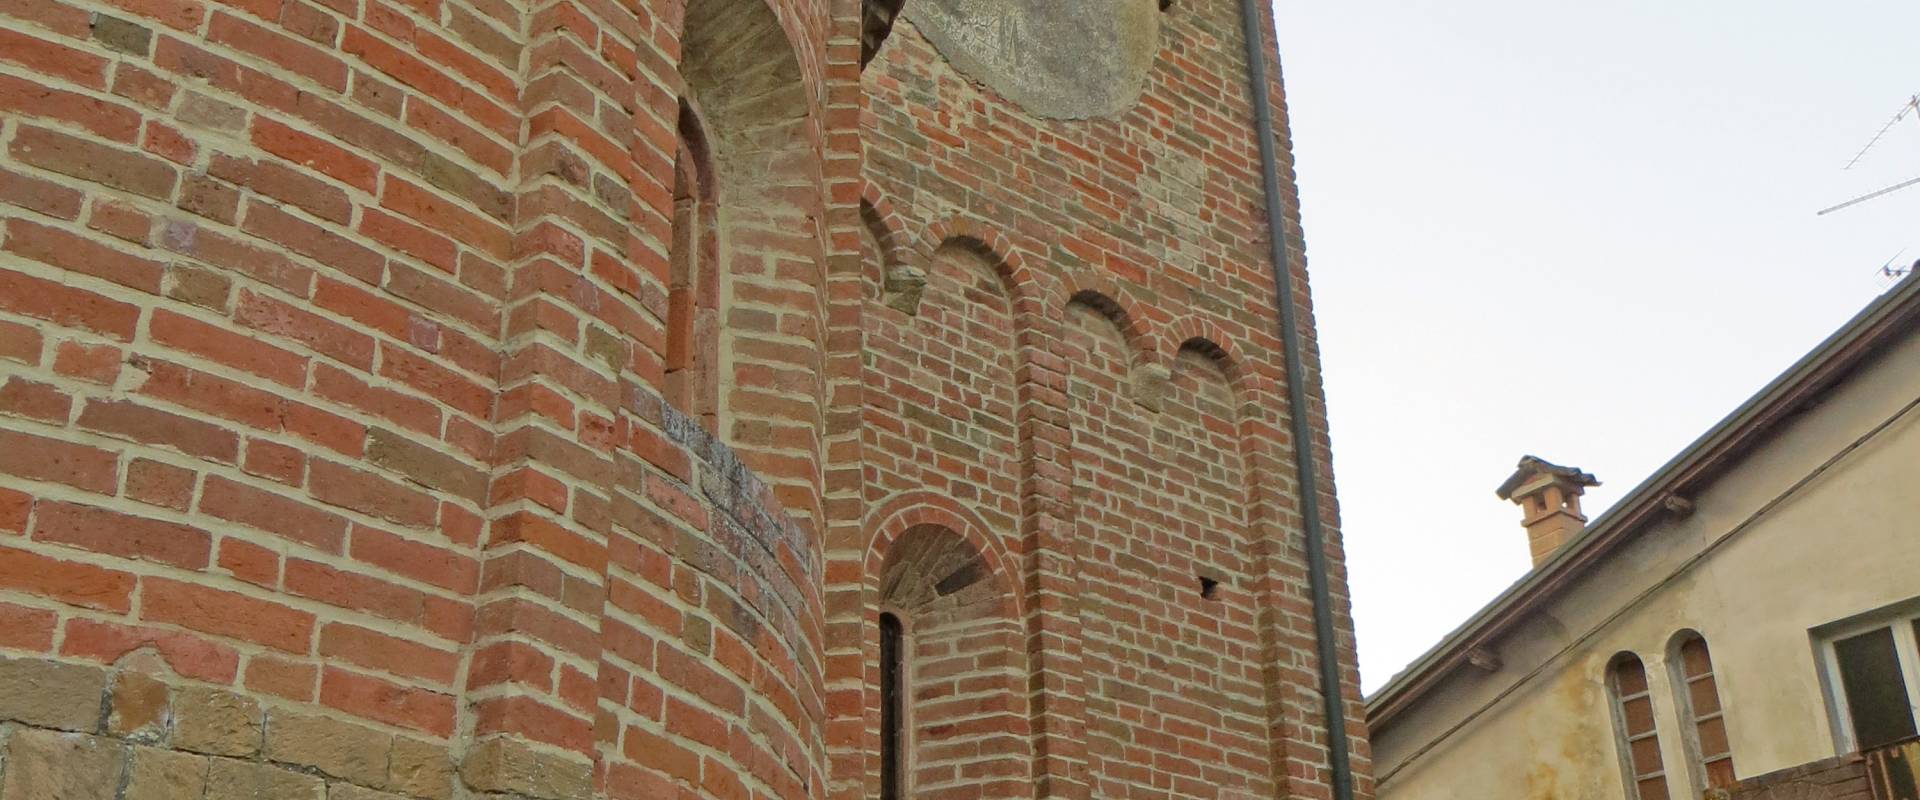 Pieve di San Biagio (Talignano, Sala Baganza) - abside e campanile 2019-09-16 foto di Parma198